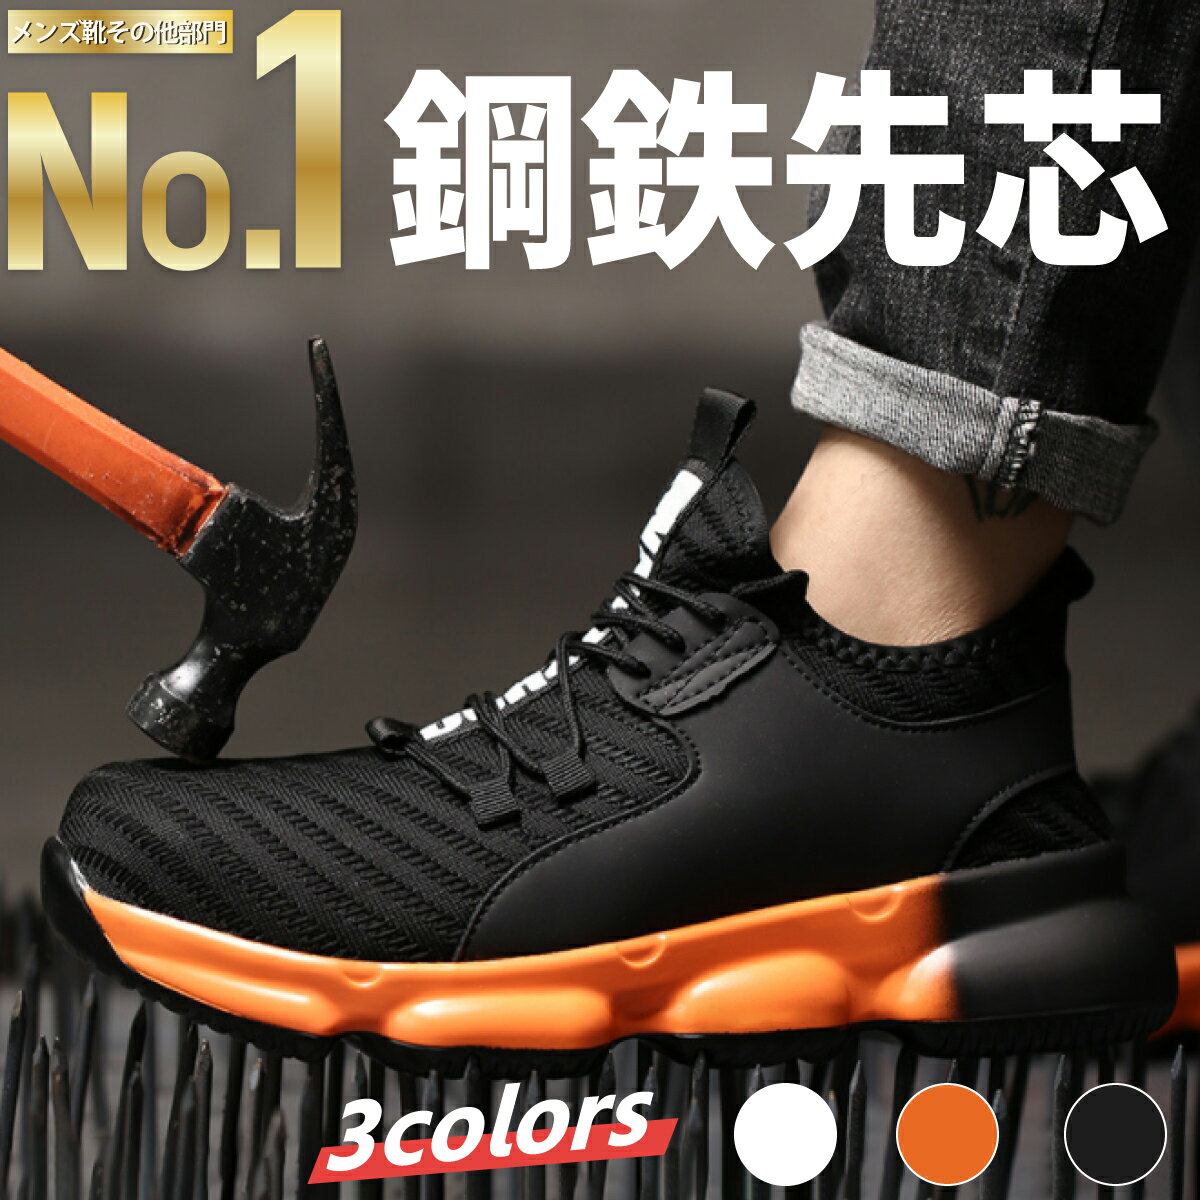 安全靴 ジーデージャパン WORKWAVE 短靴 W1100 ローカット 紐 メンズ レディース 作業靴 JSAA規格A種 制電 23.5cm-30cm